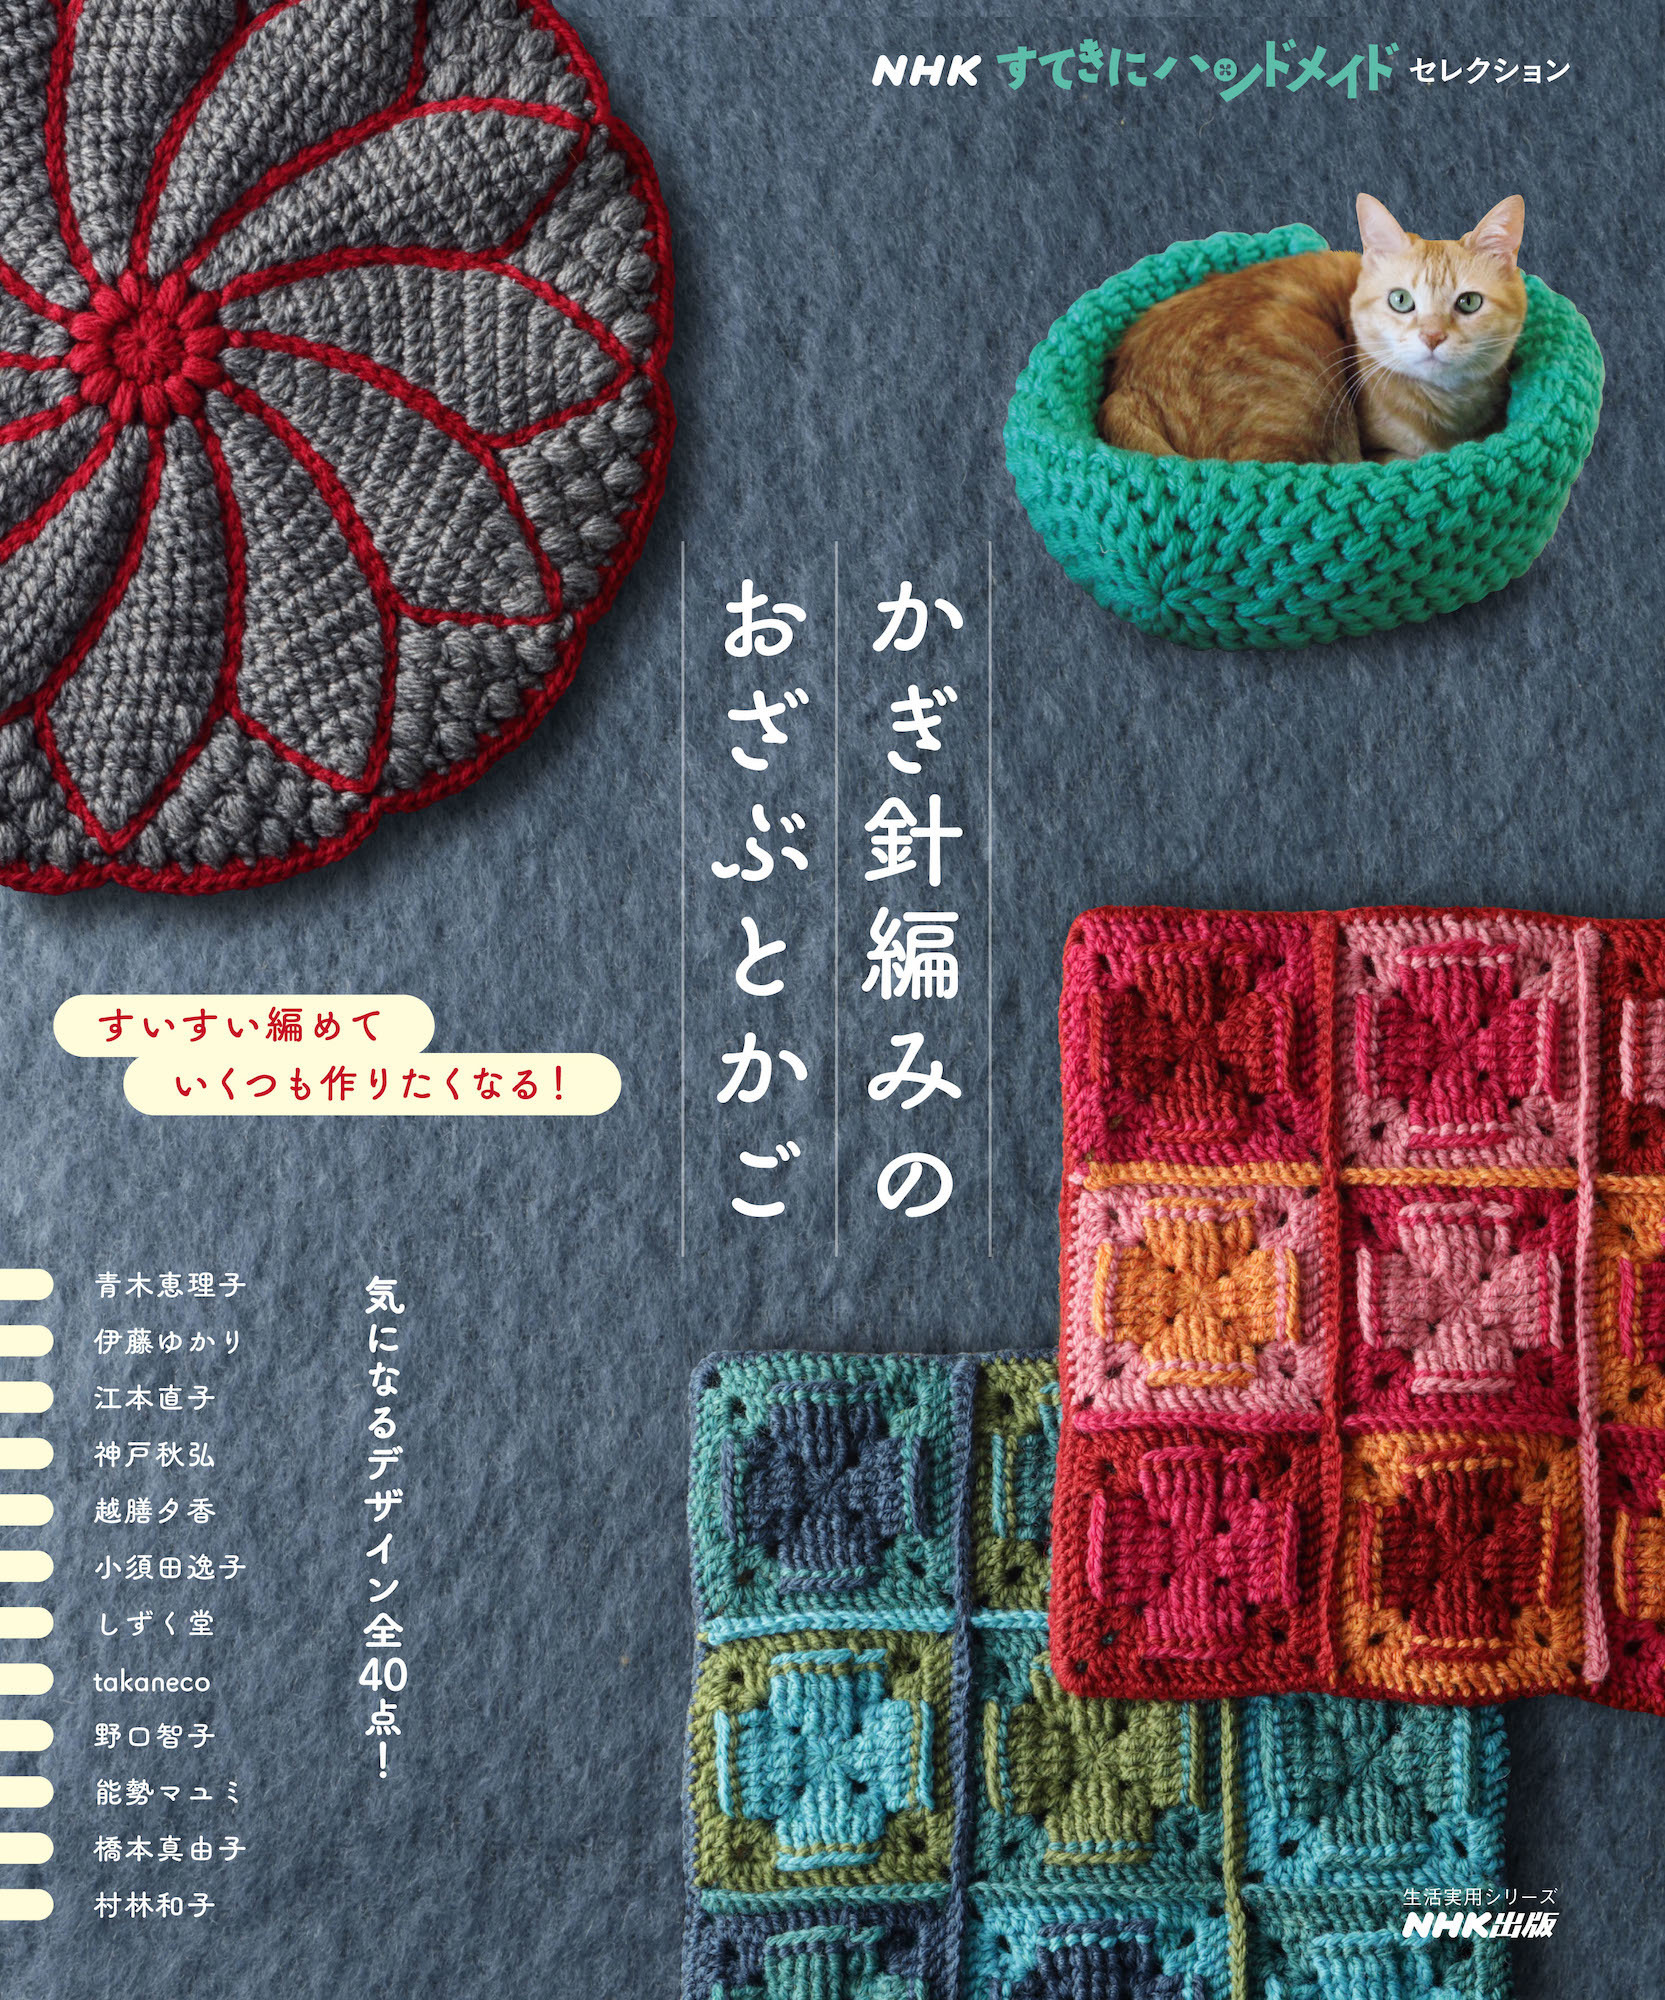 ねこかごの作り方も掲載、『NHKすてきにハンドメイドセレクション かぎ針編みのおざぶとかご』刊行 |  動物のリアルを伝えるWebメディア「REANIMAL」